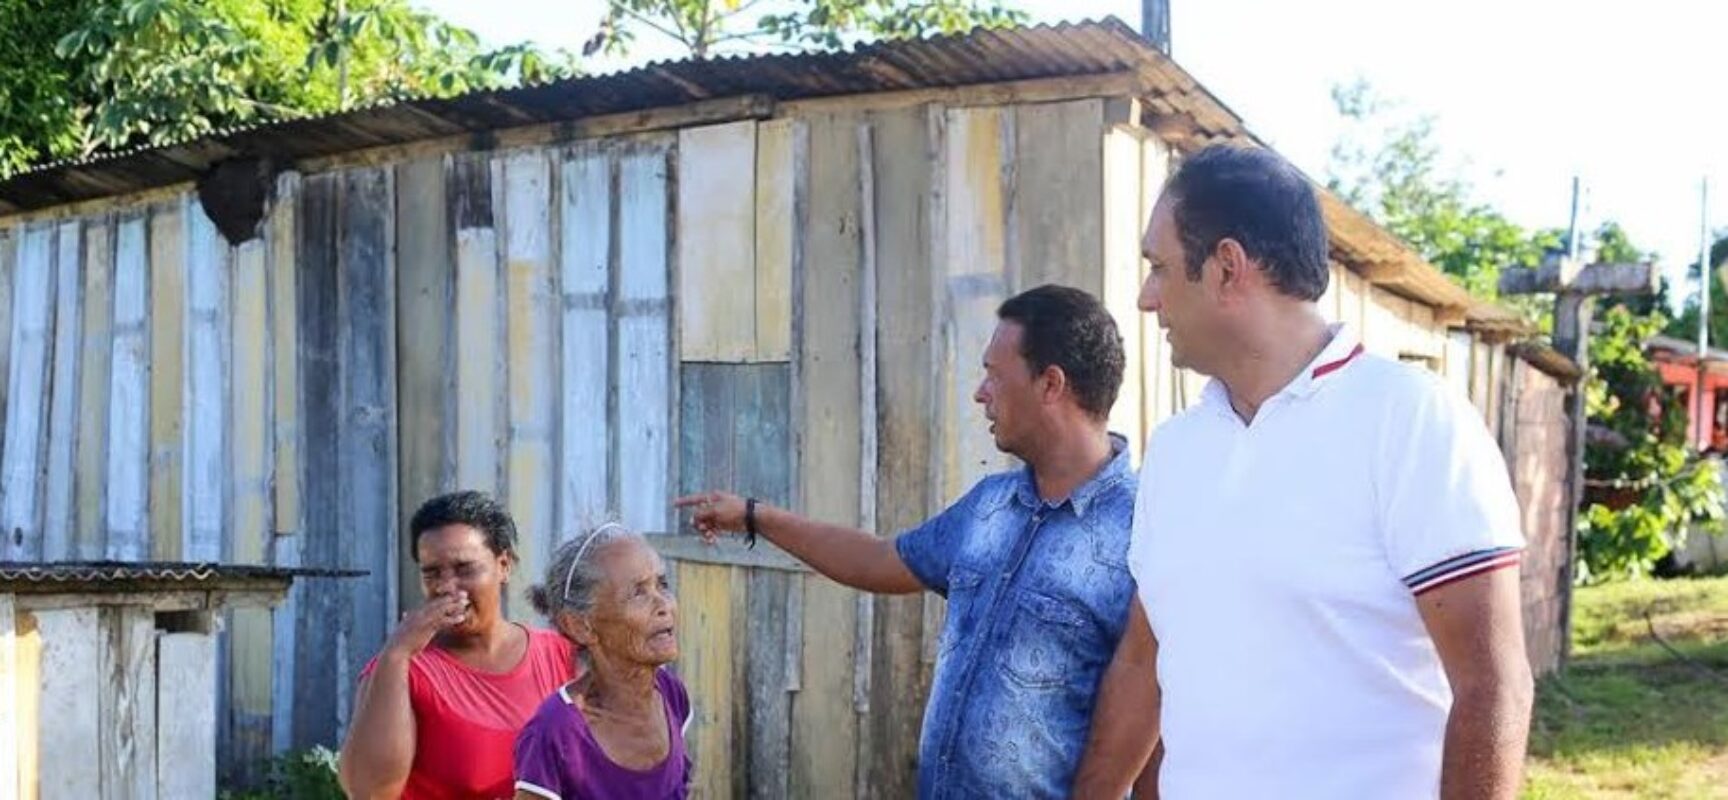 Em Ilhéus, famílias de Urucutuca que residem em casas de madeira vão ganhar moradias de alvenaria